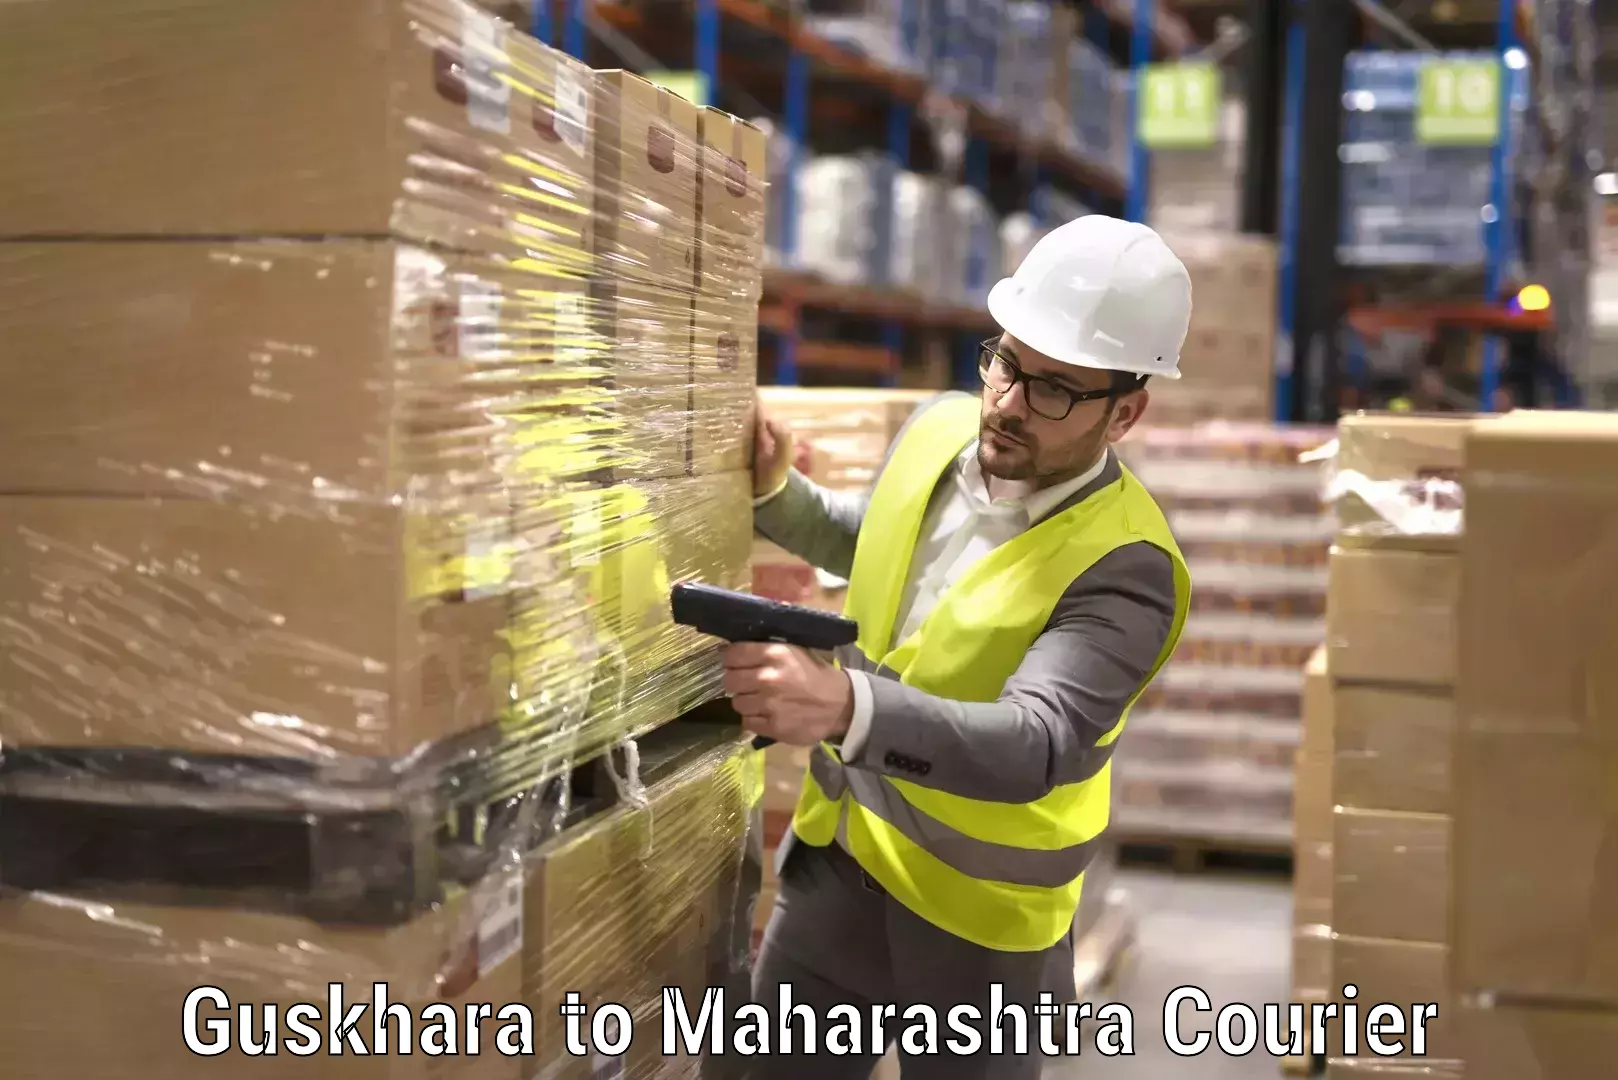 Local household movers Guskhara to Maharashtra